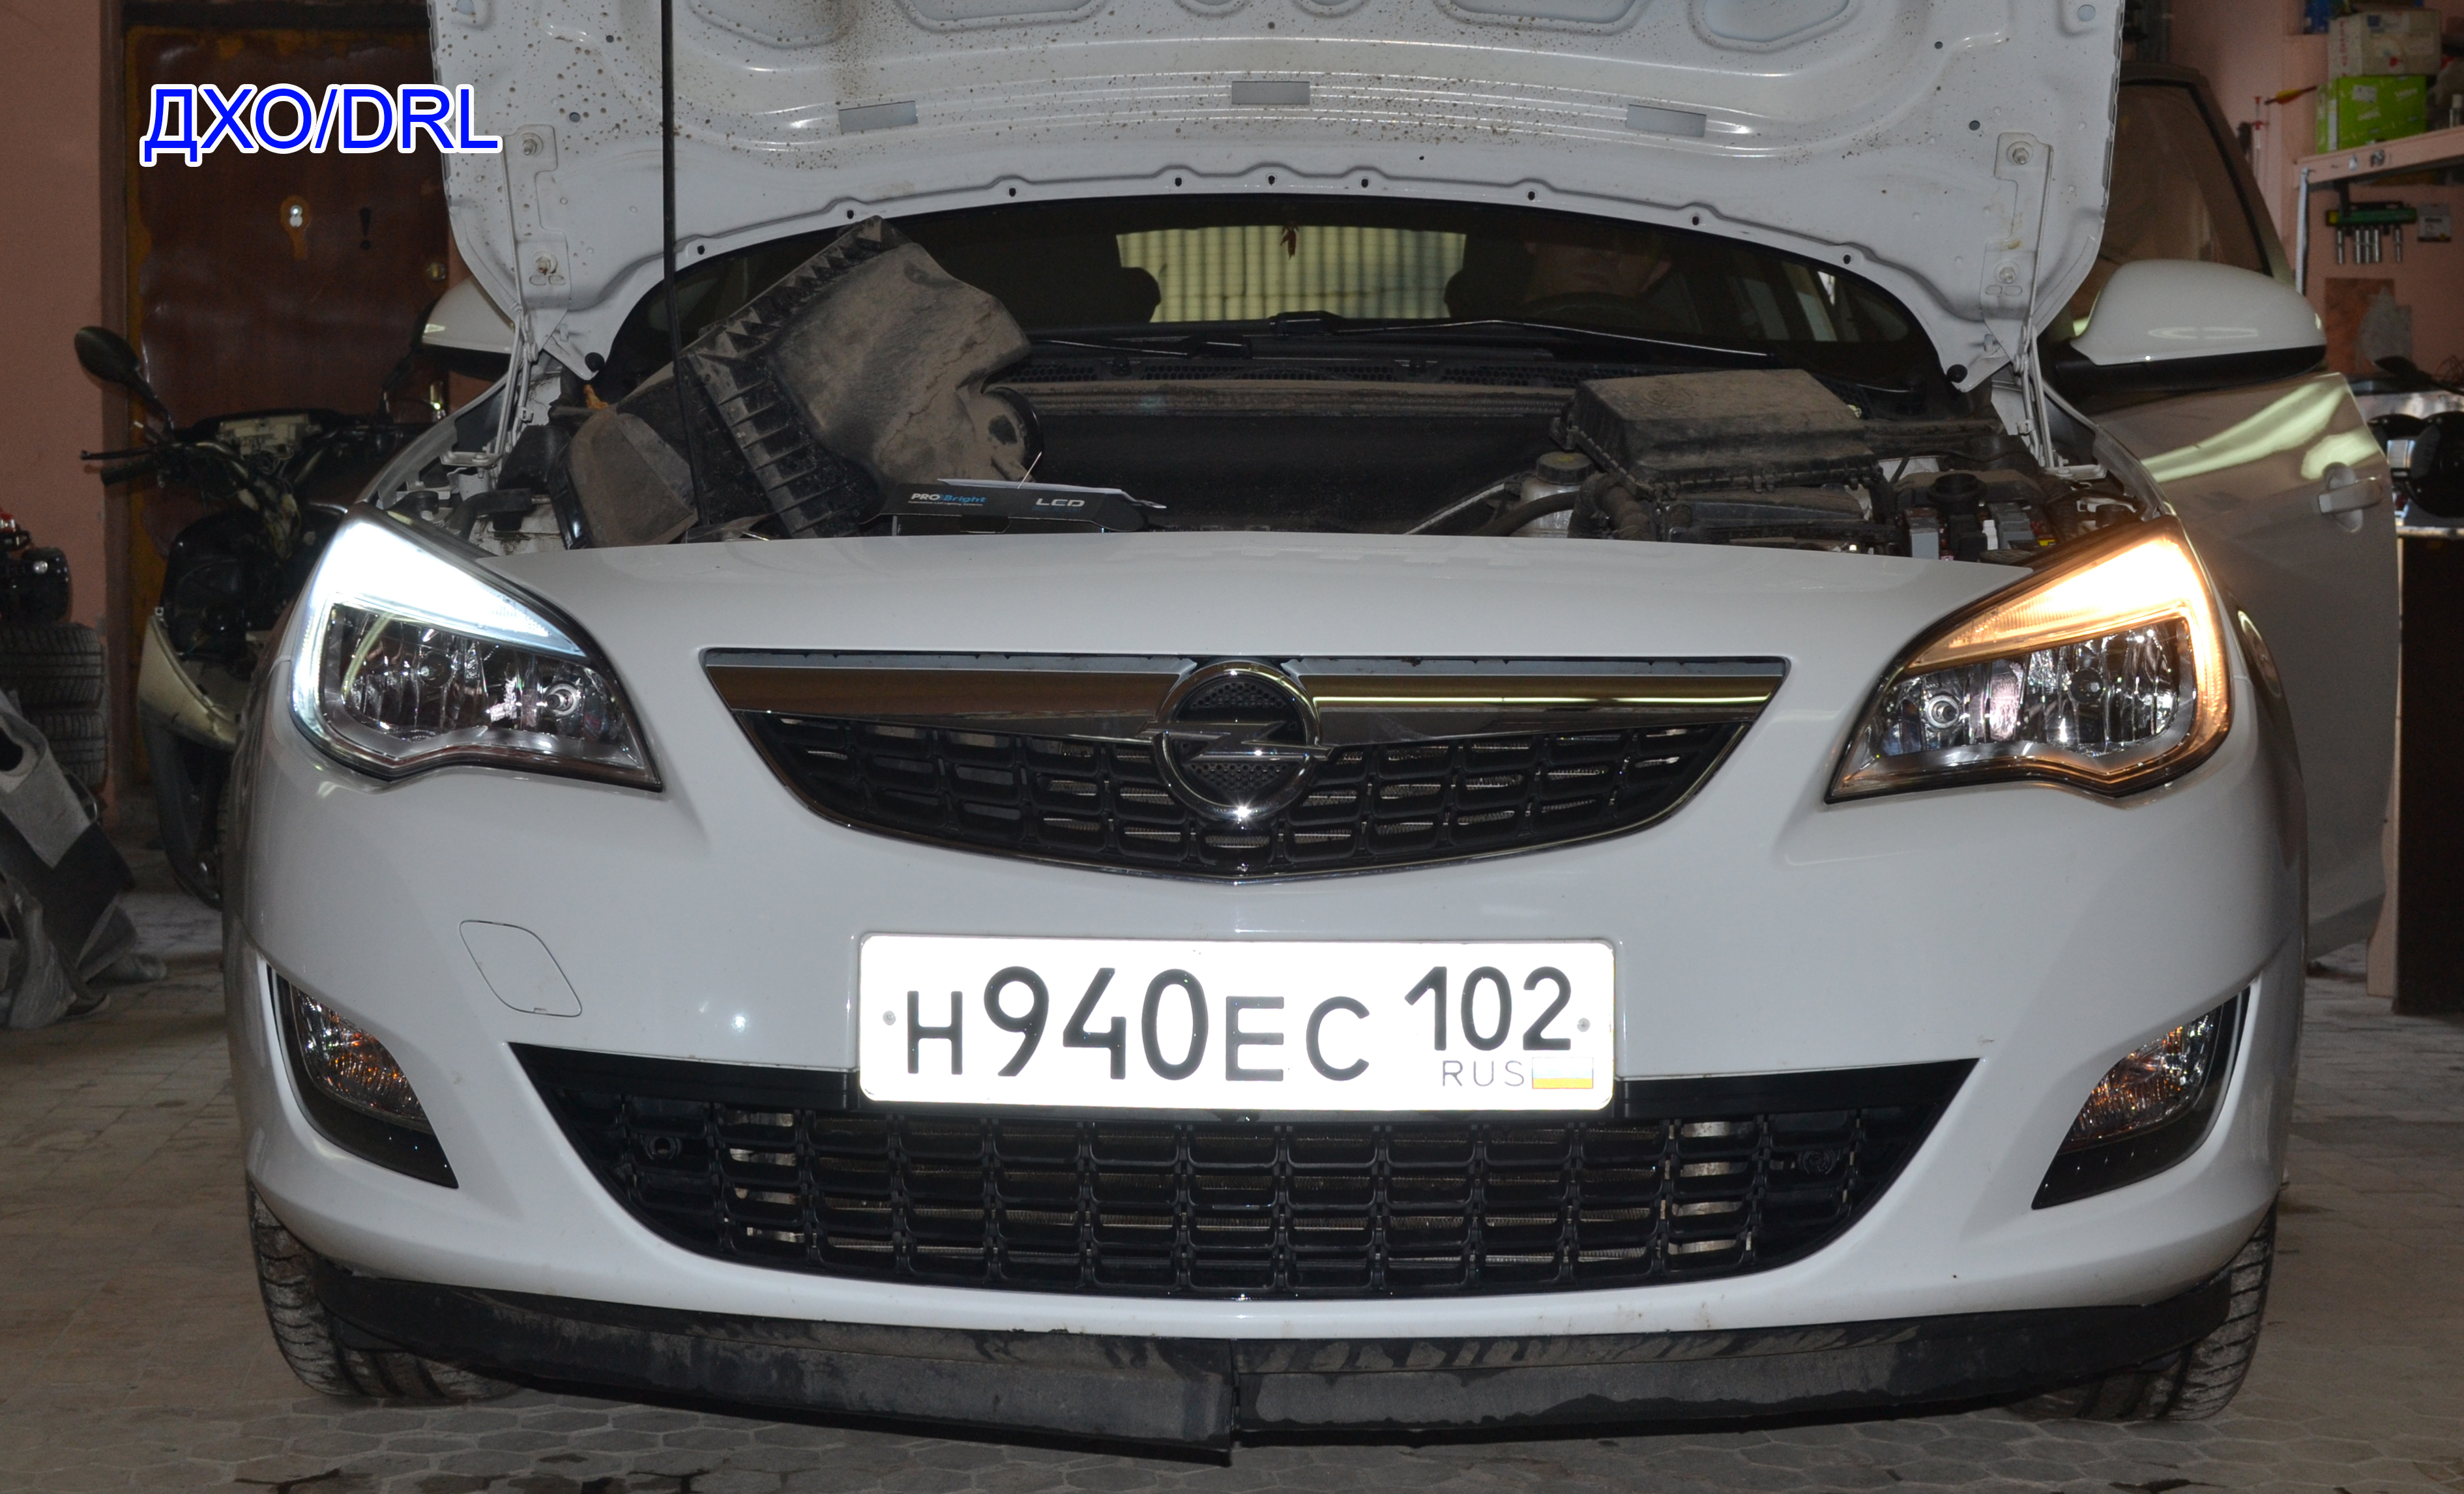 Дневные ходовые огни Dectane на Opel Astra H